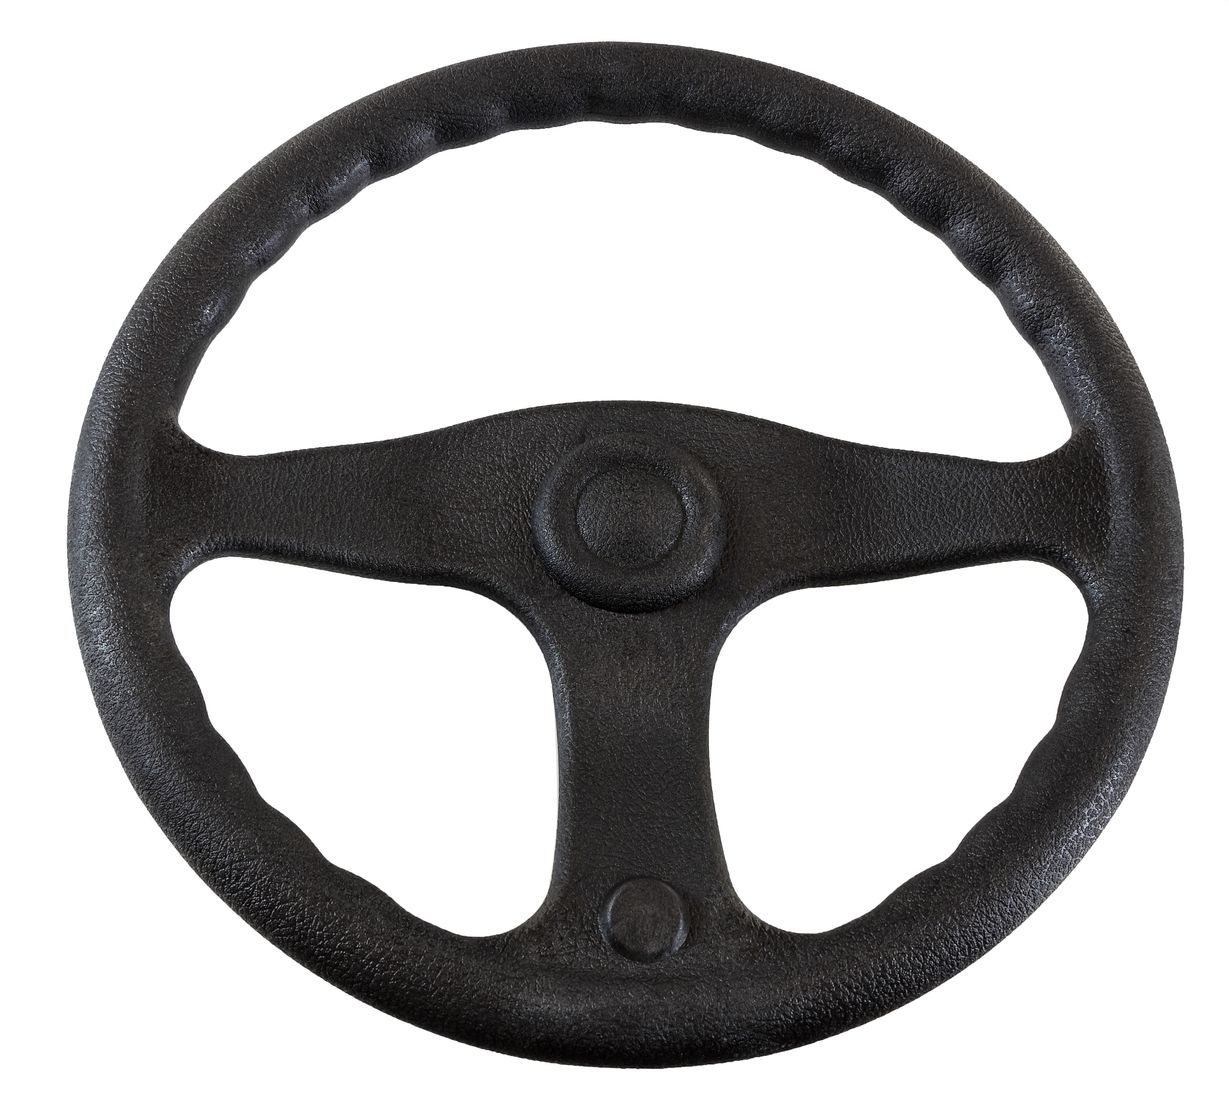 Рулевое колесо E.Chance, обод и спицы черные д. 330 мм D33_EC рулевое колесо versilia more 10016456